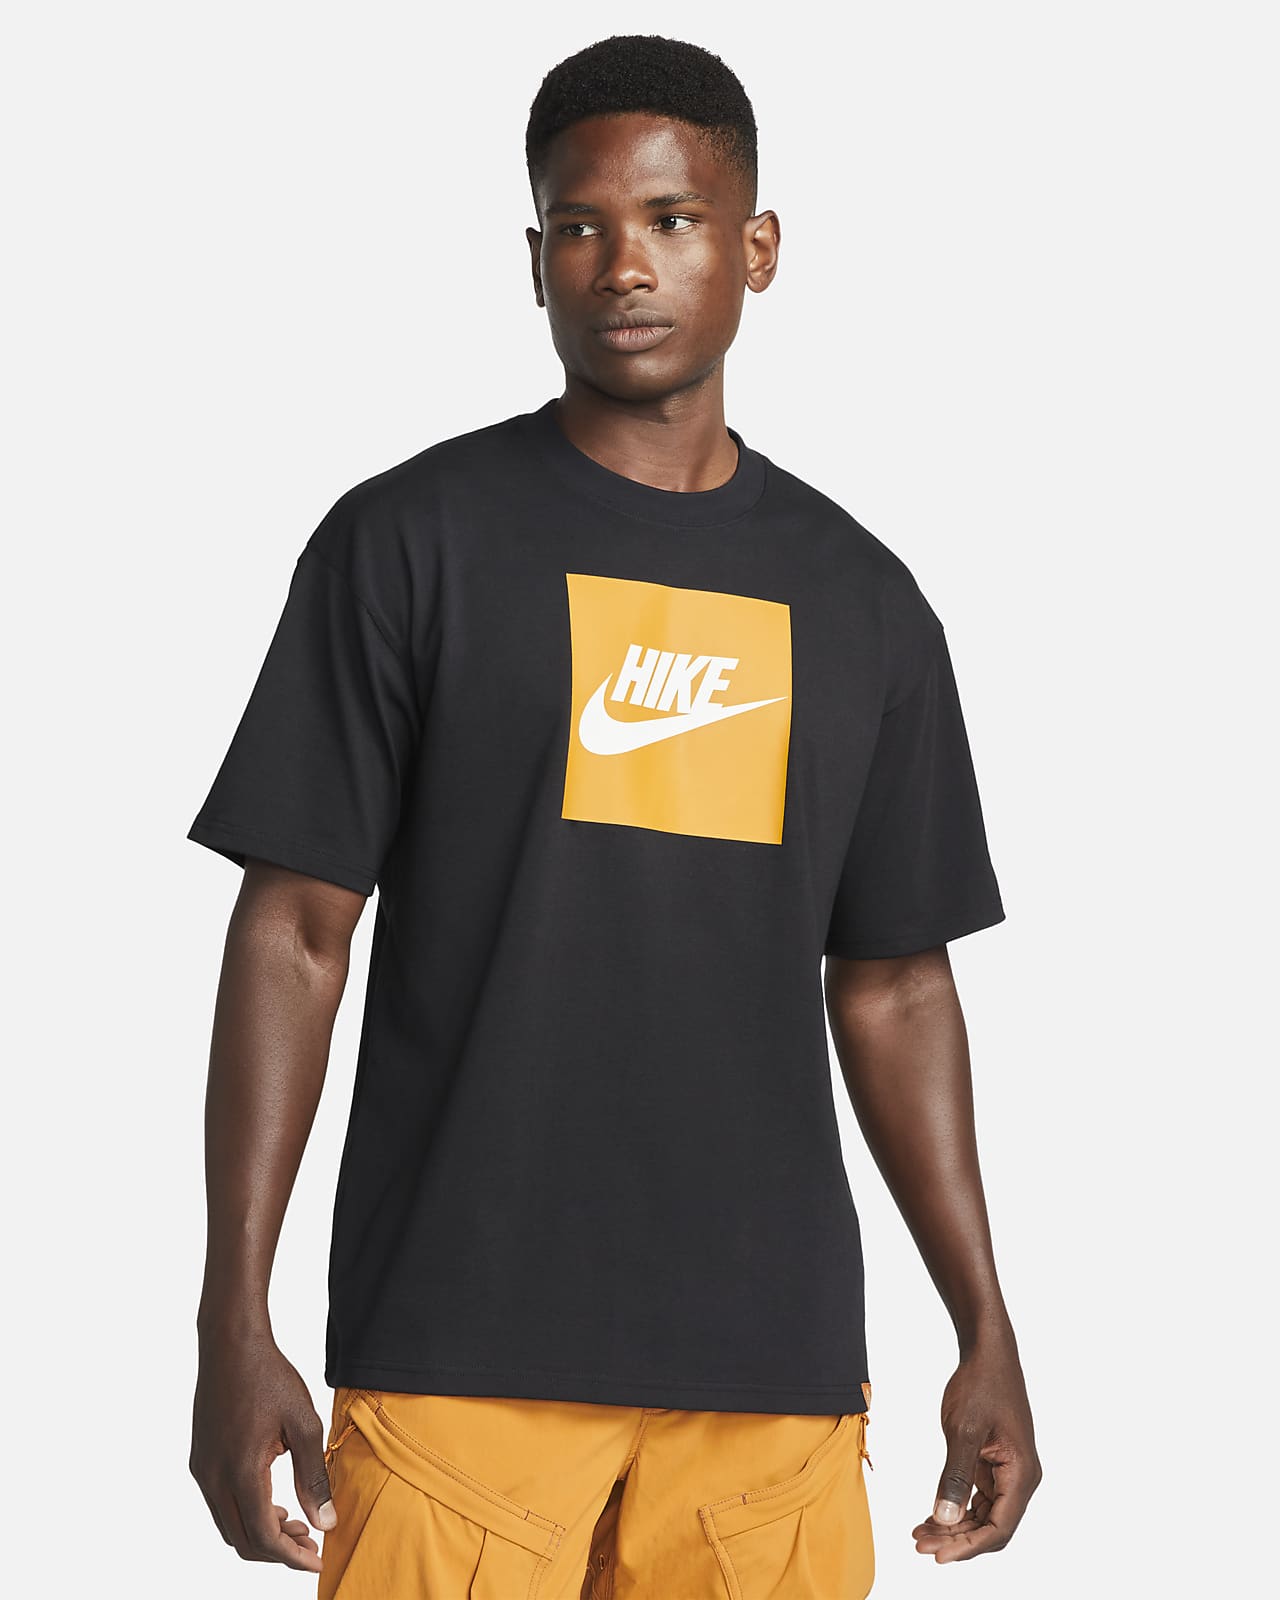 Nike ACG "Hike Box" Herren-T-Shirt